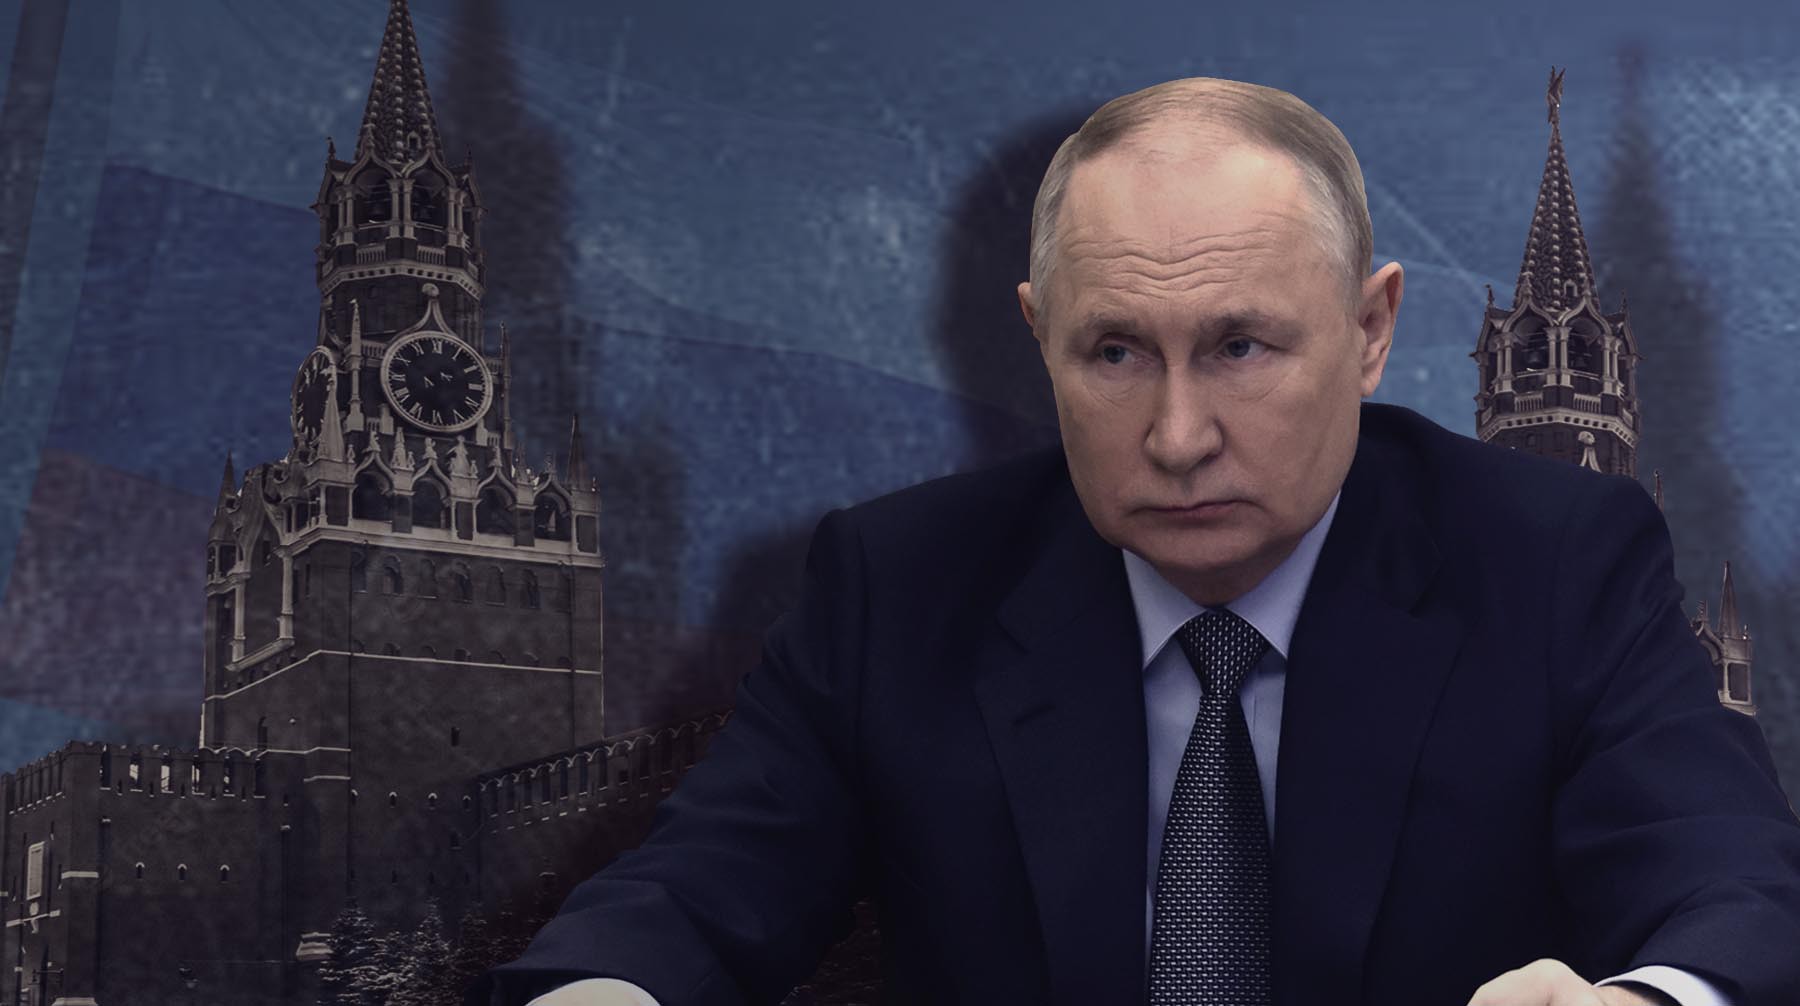 Dailystorm - Бывшие доверенные лица Путина хирург Бокерия и саксофонист Бутман заявили о поддержке президента в предвыборной гонке